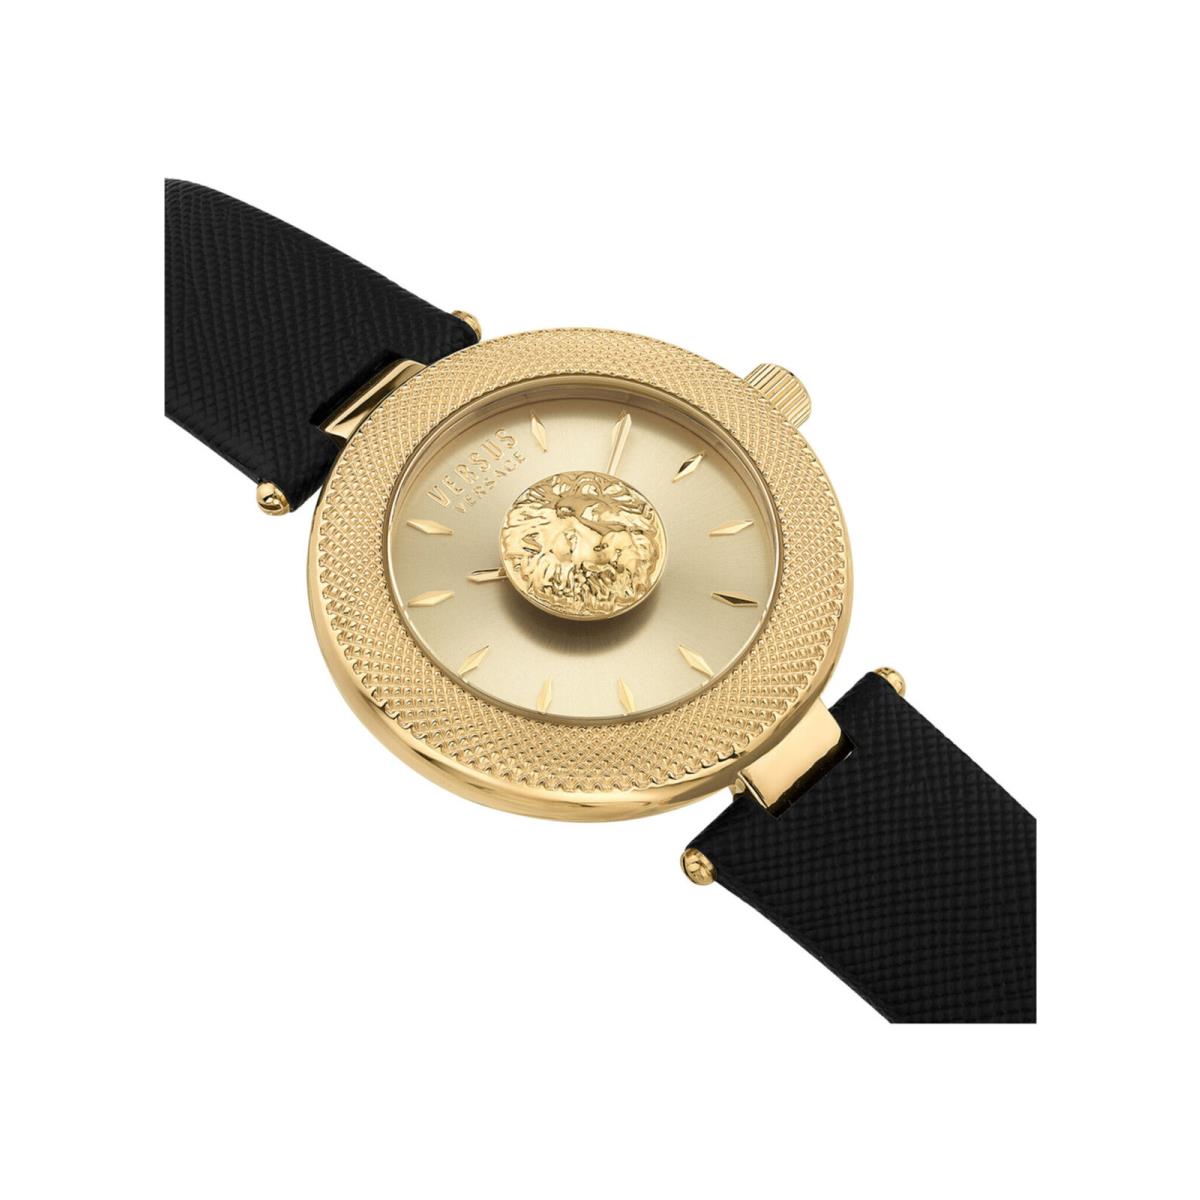 Versus Versace Womens Brick Lane Lion Gold 40mm Strap Fashion Watch